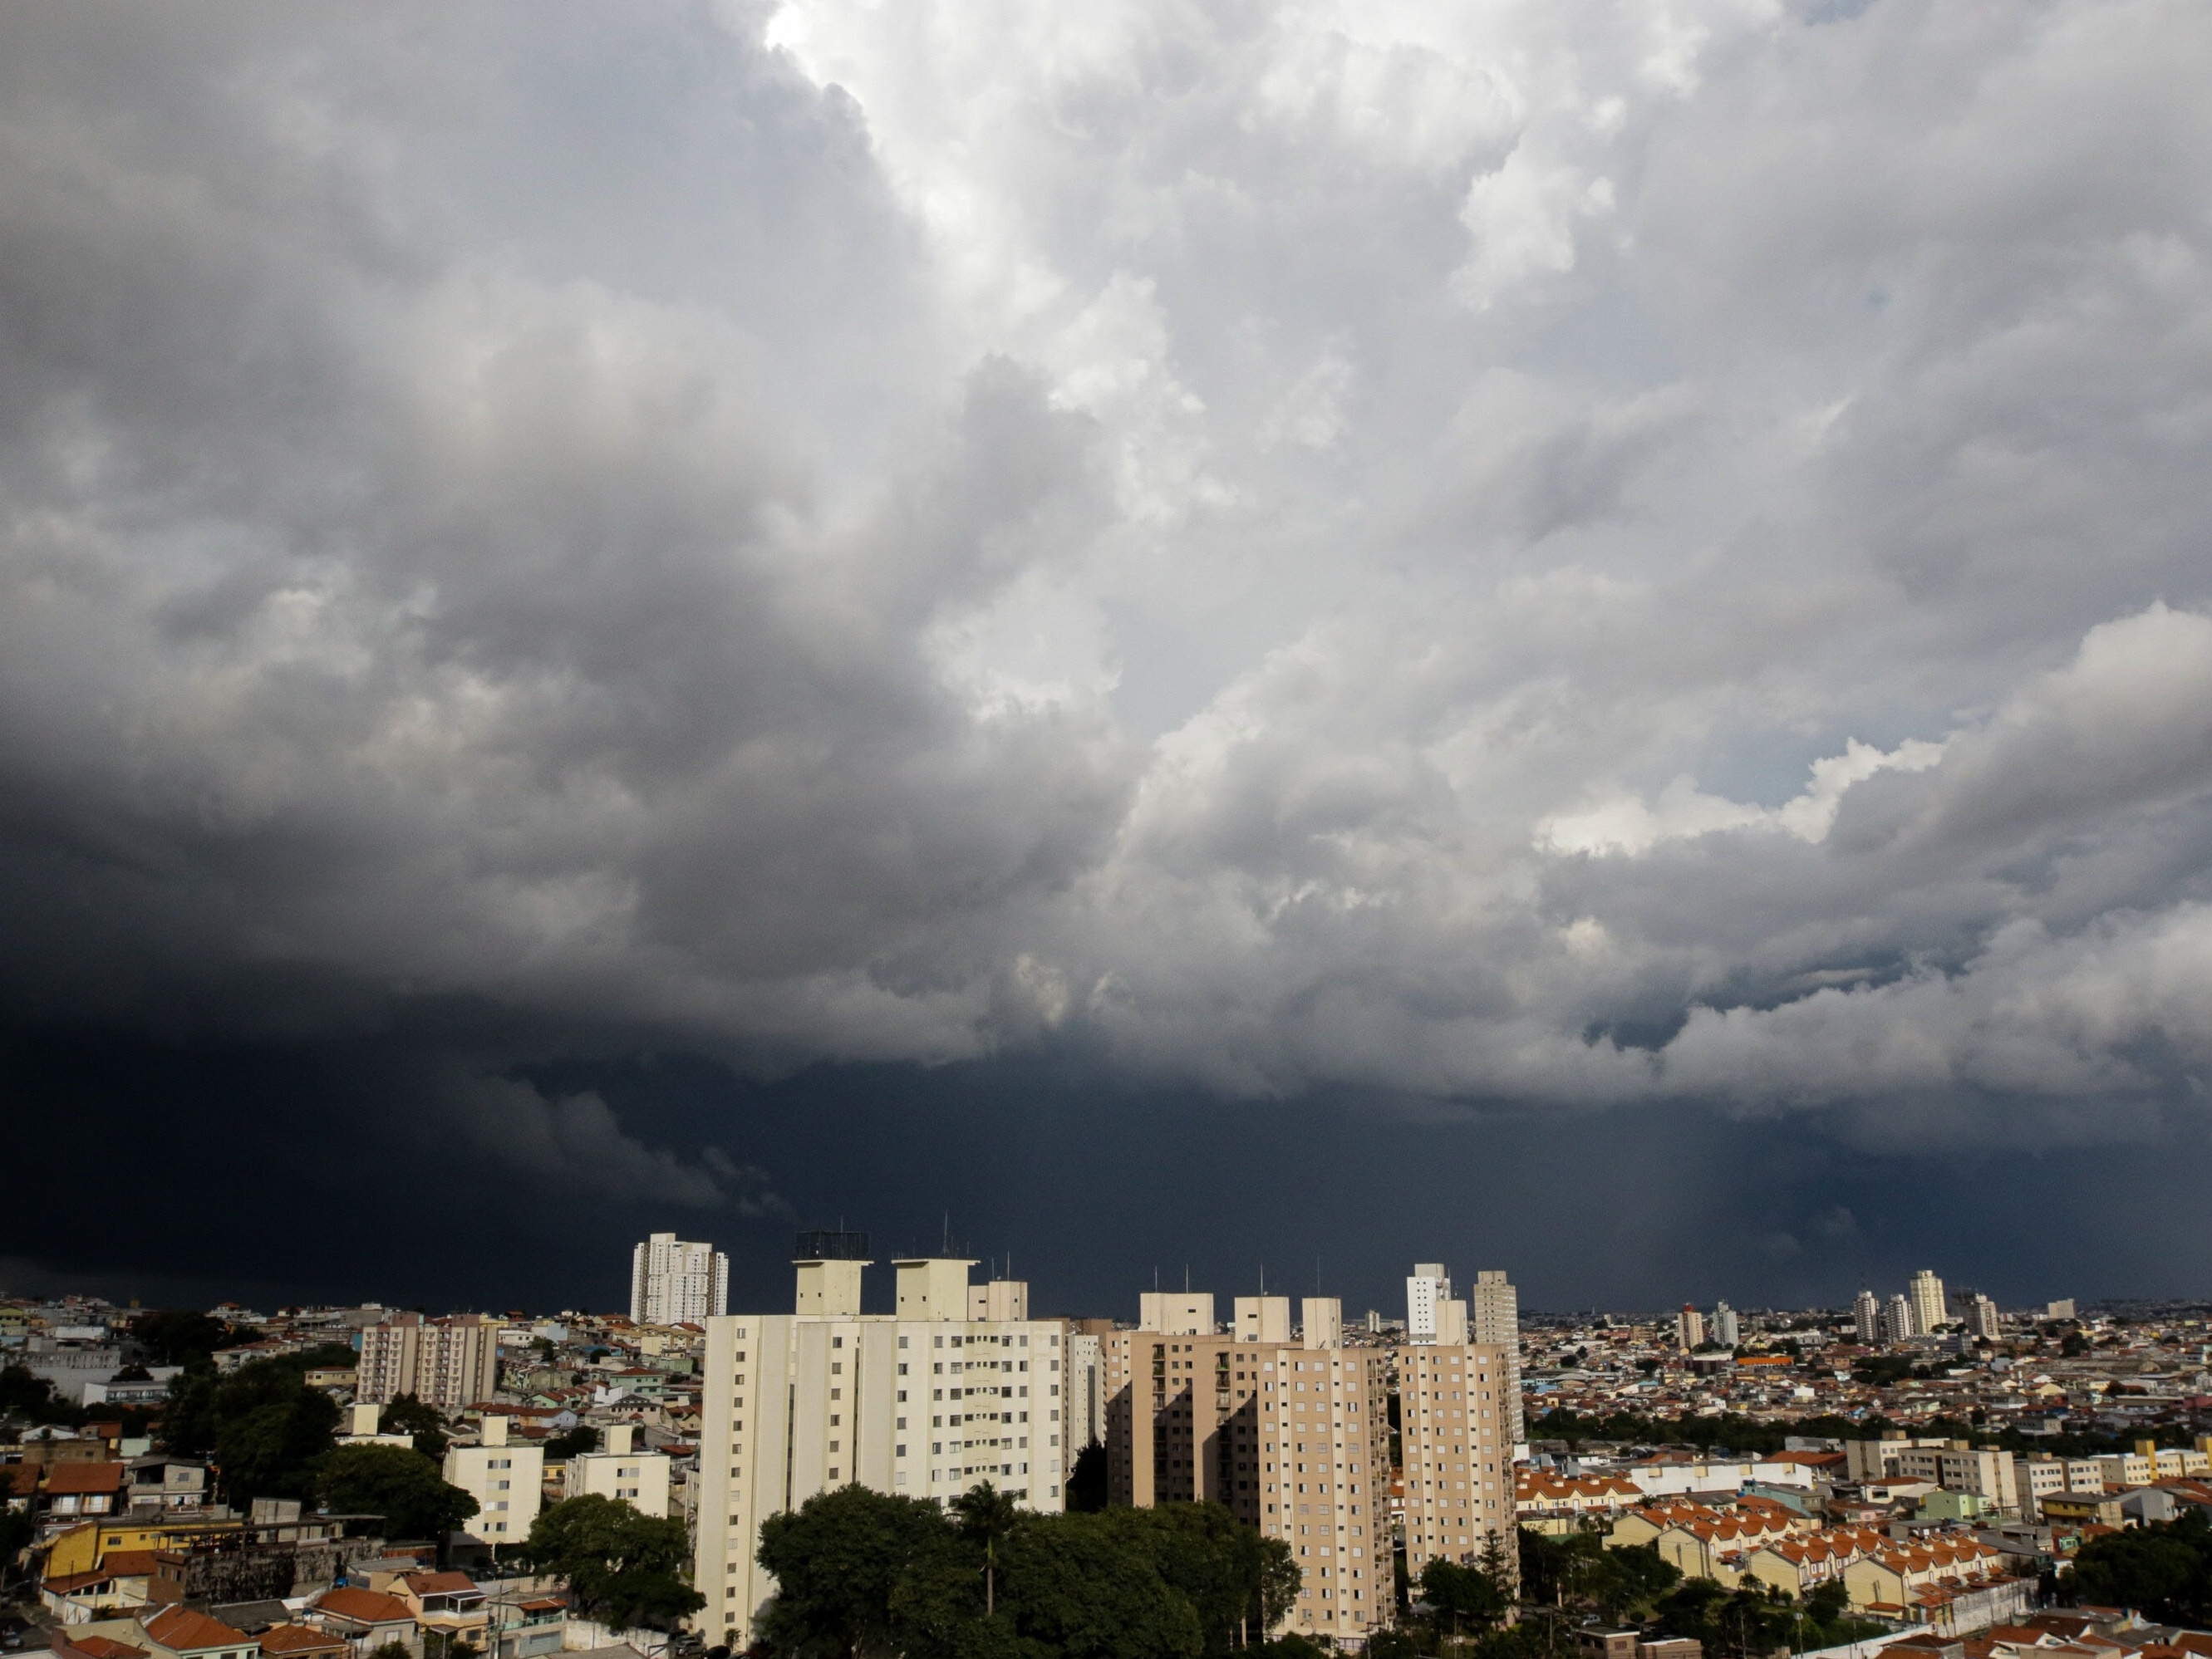 São Paulo entra em estado de atenção para alagamentos, diz CGE - 18/11/2020  - UOL Notícias